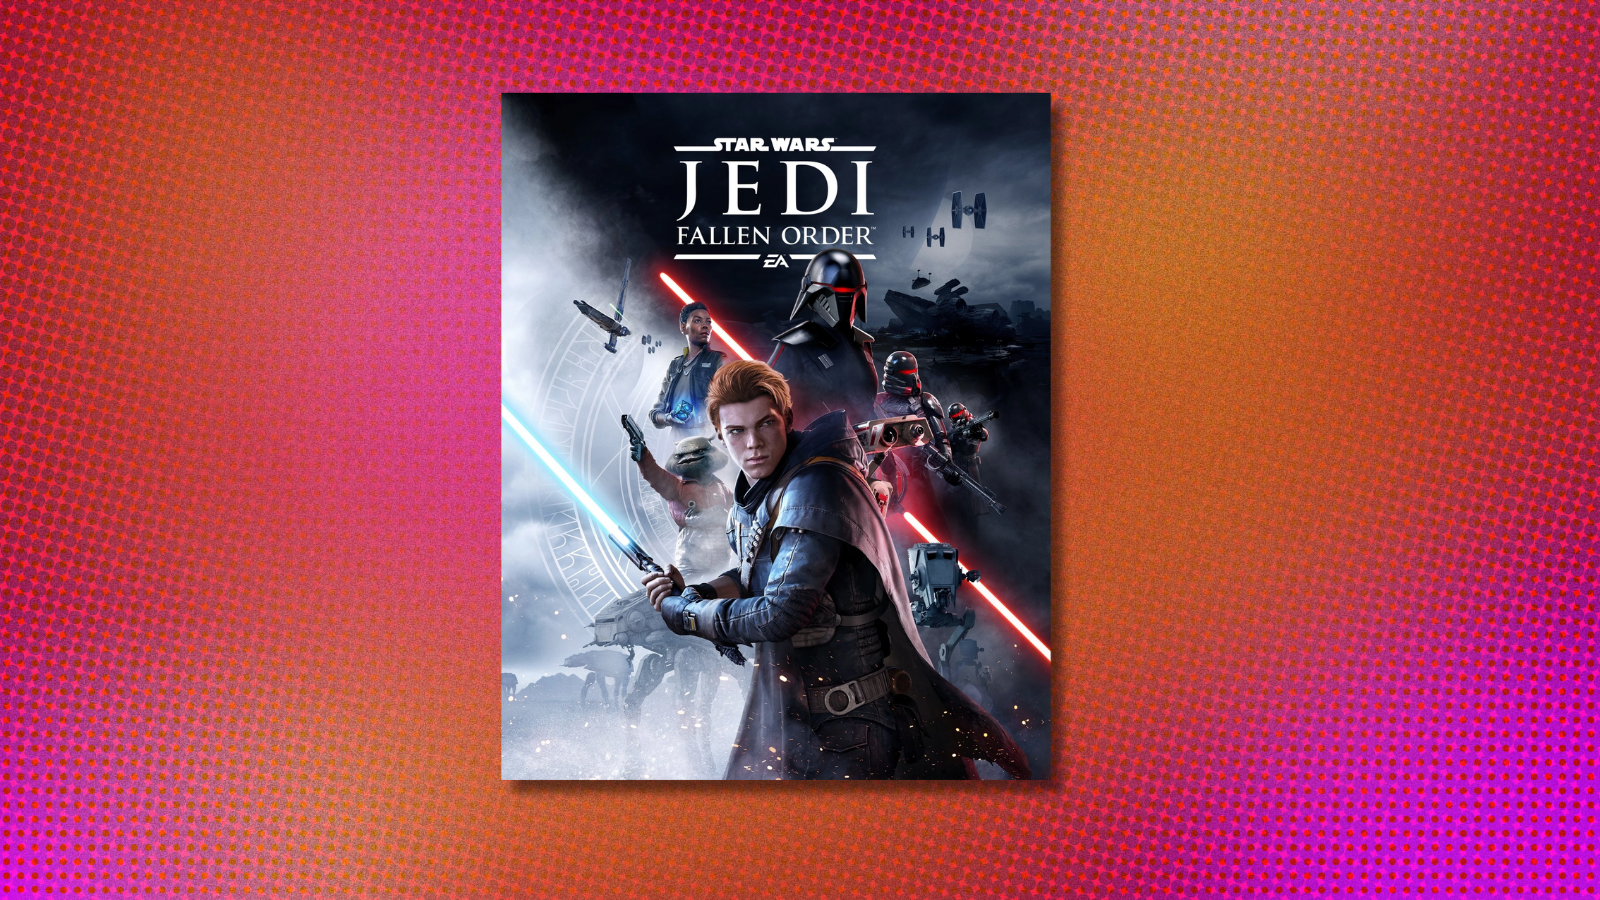 Star Wars Jedi: Fallen Order on pink and orange background